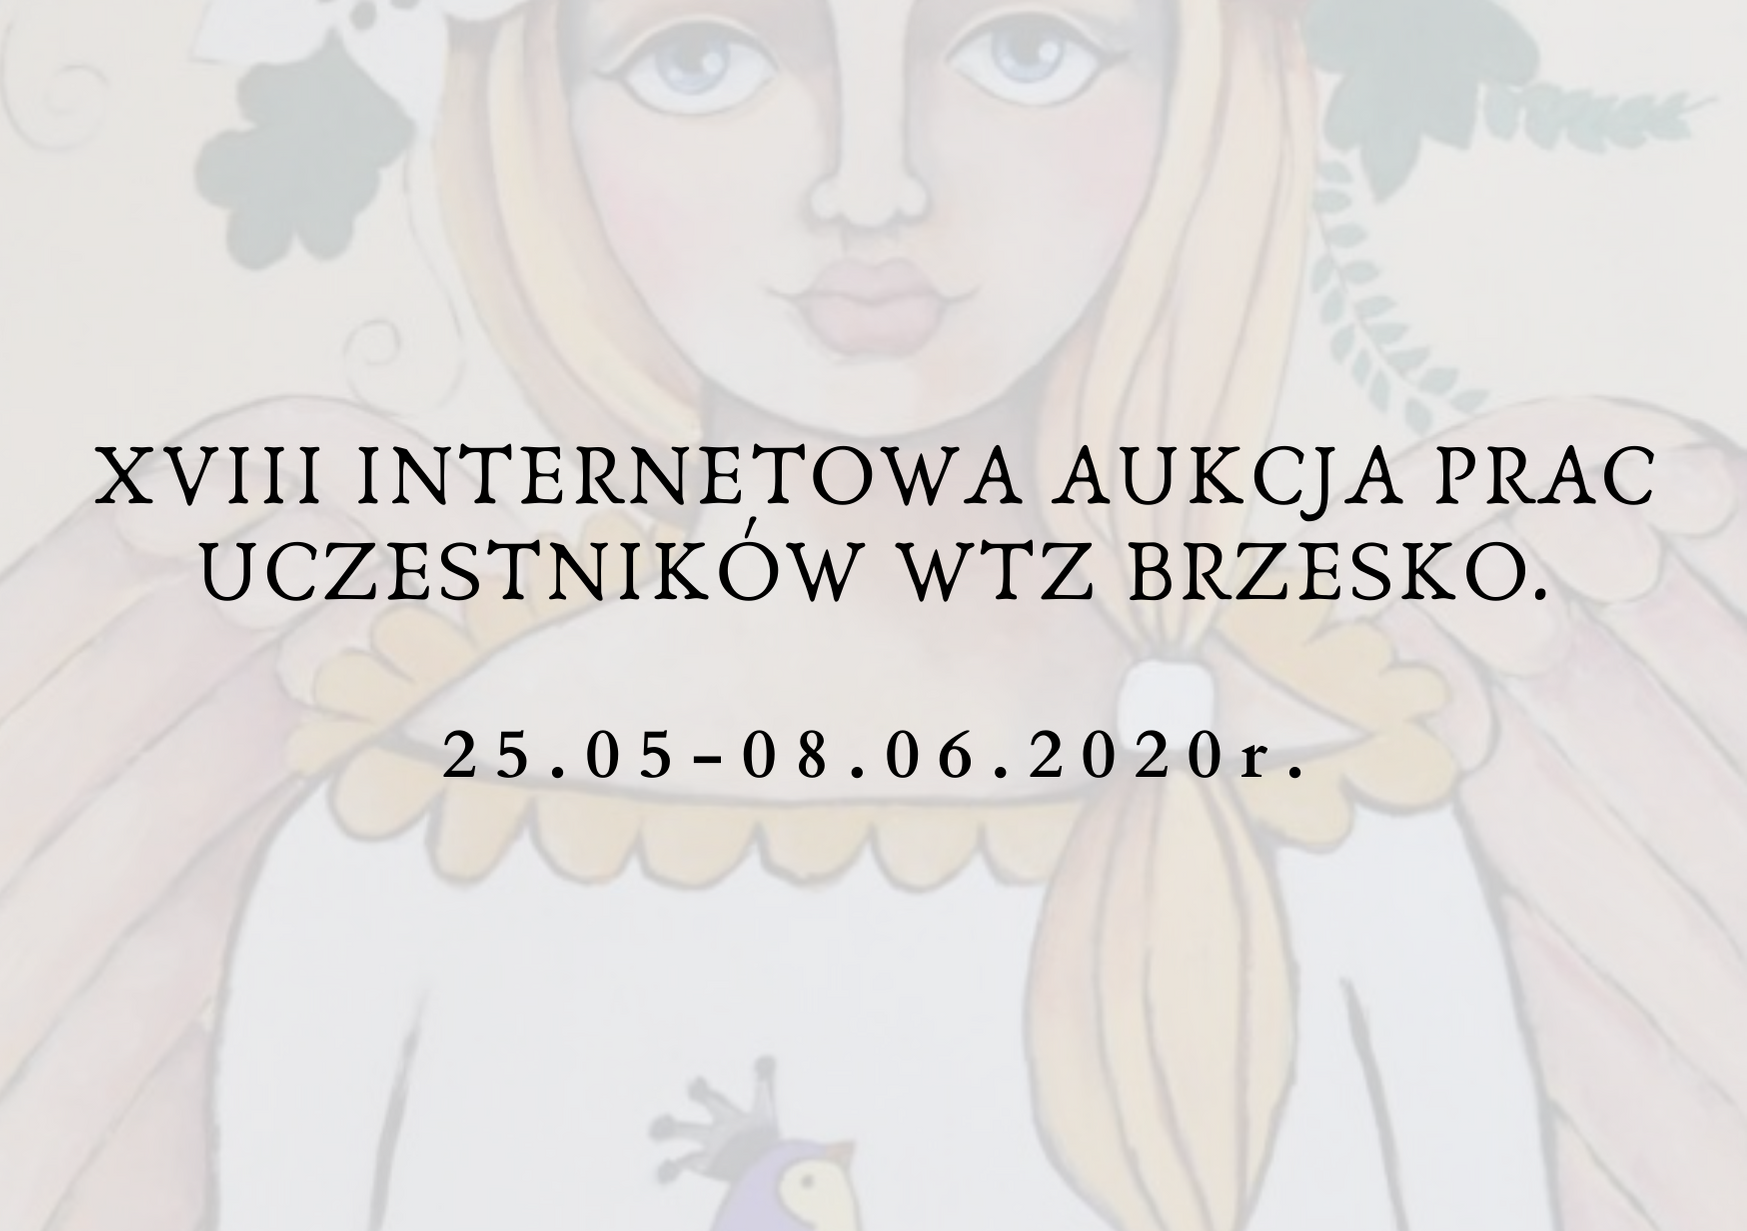 XVIII Internetowa Aukcja Prac Uczestników WTZ w Brzesku.